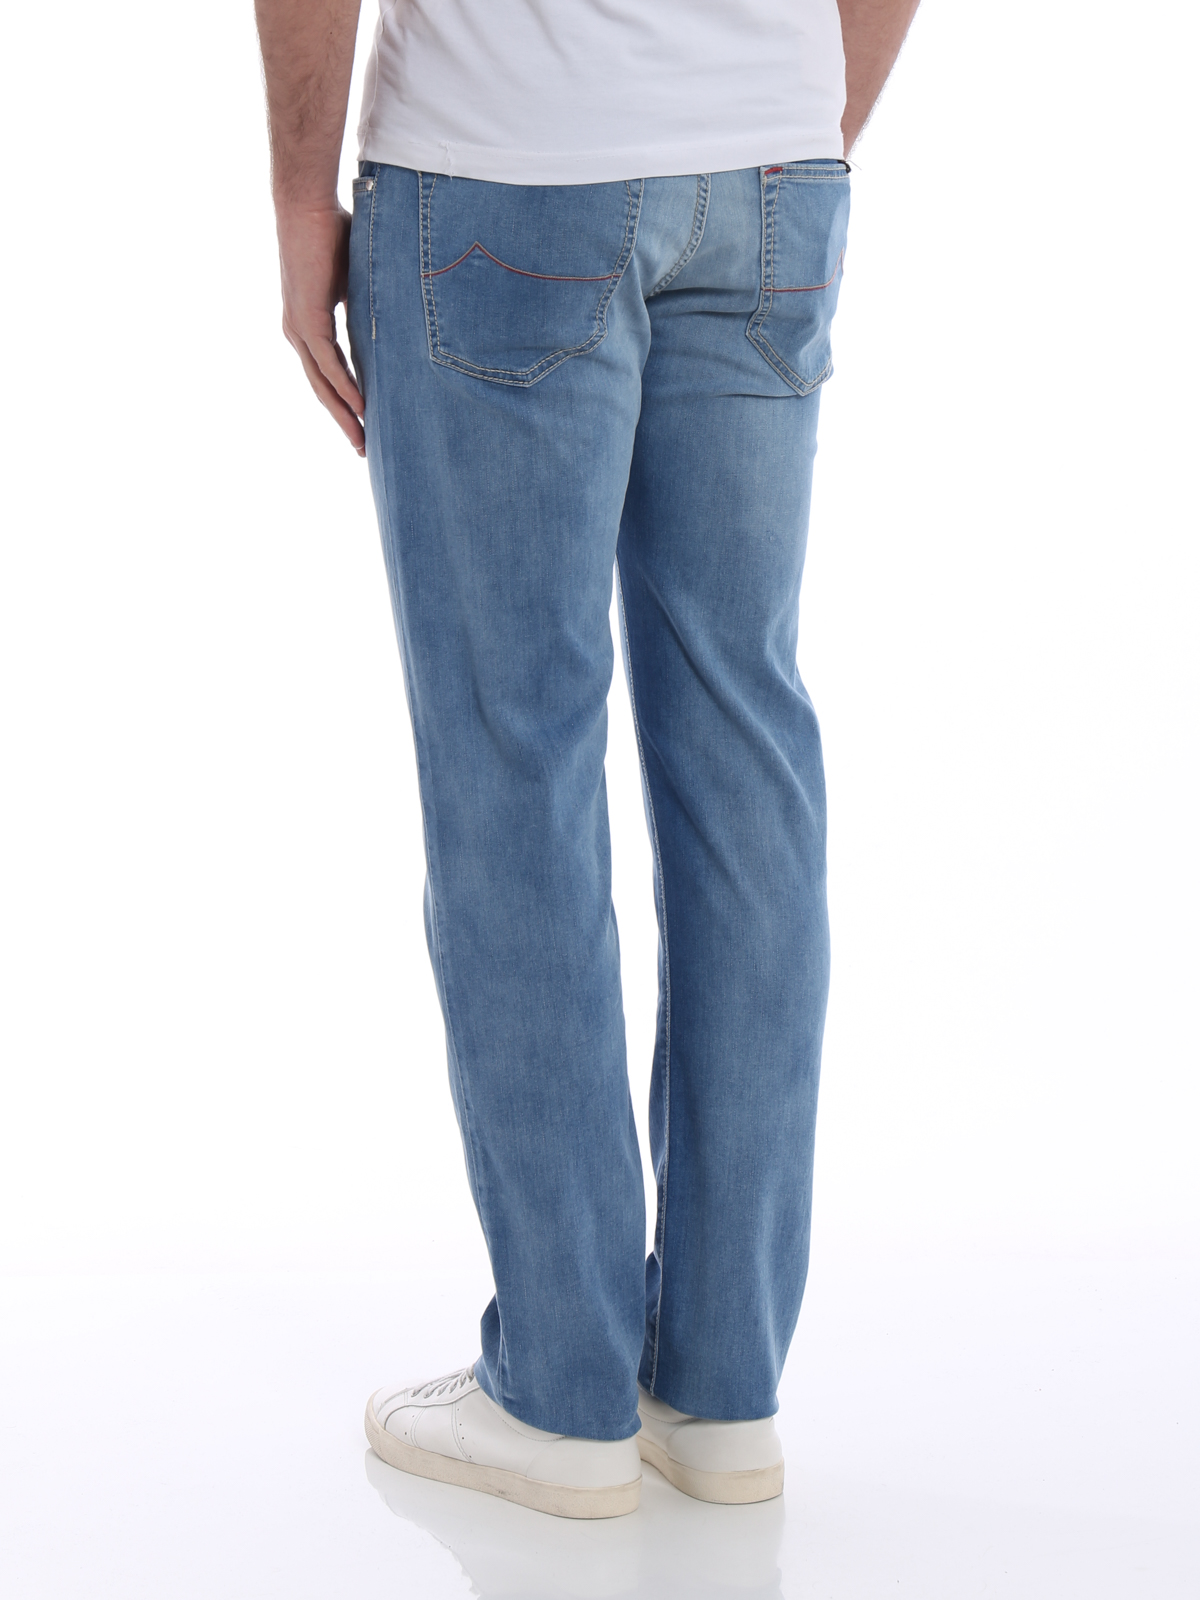 jacob cohen jeans style 622